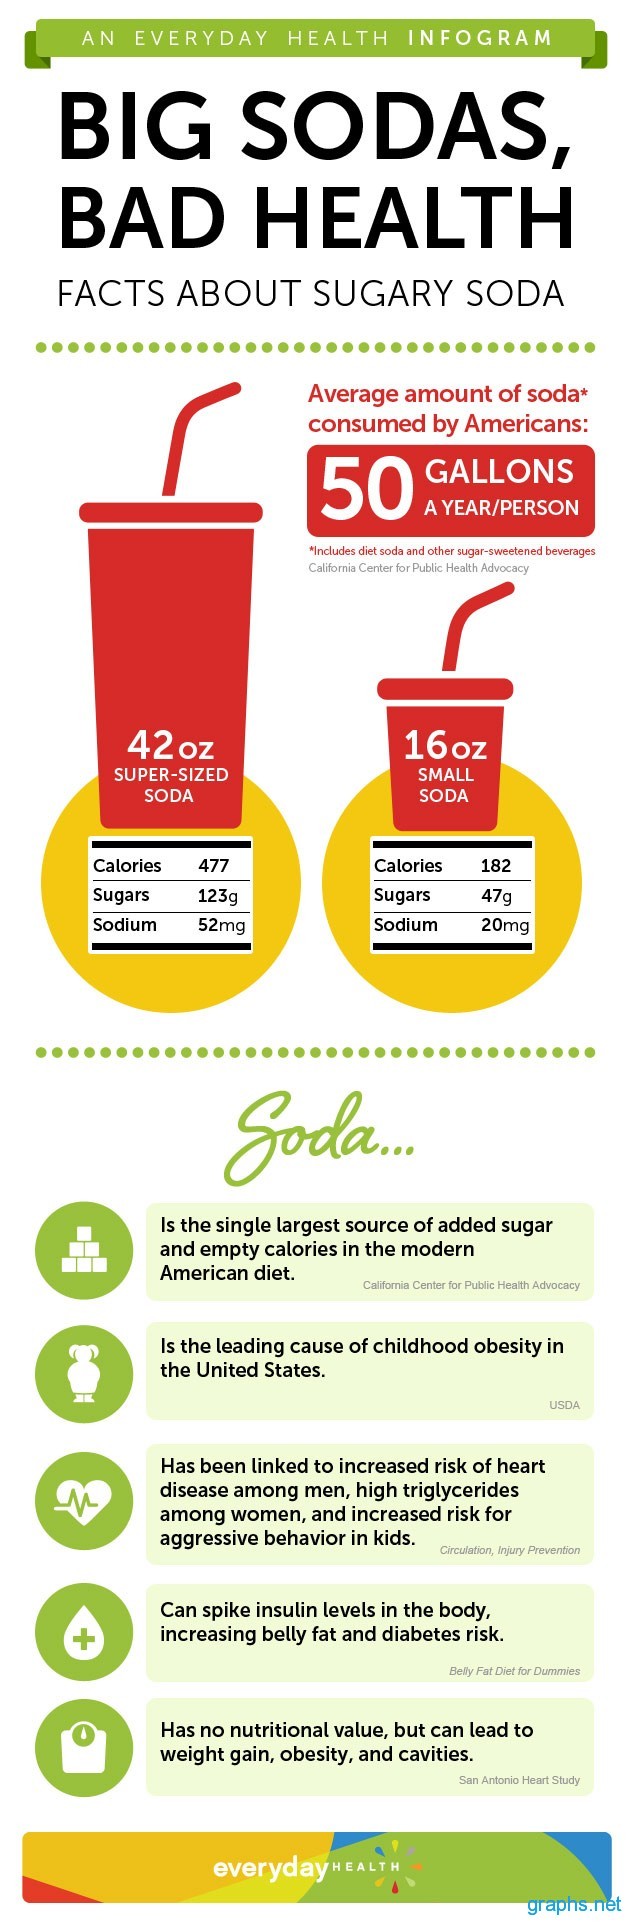 Sugary Soda Facts